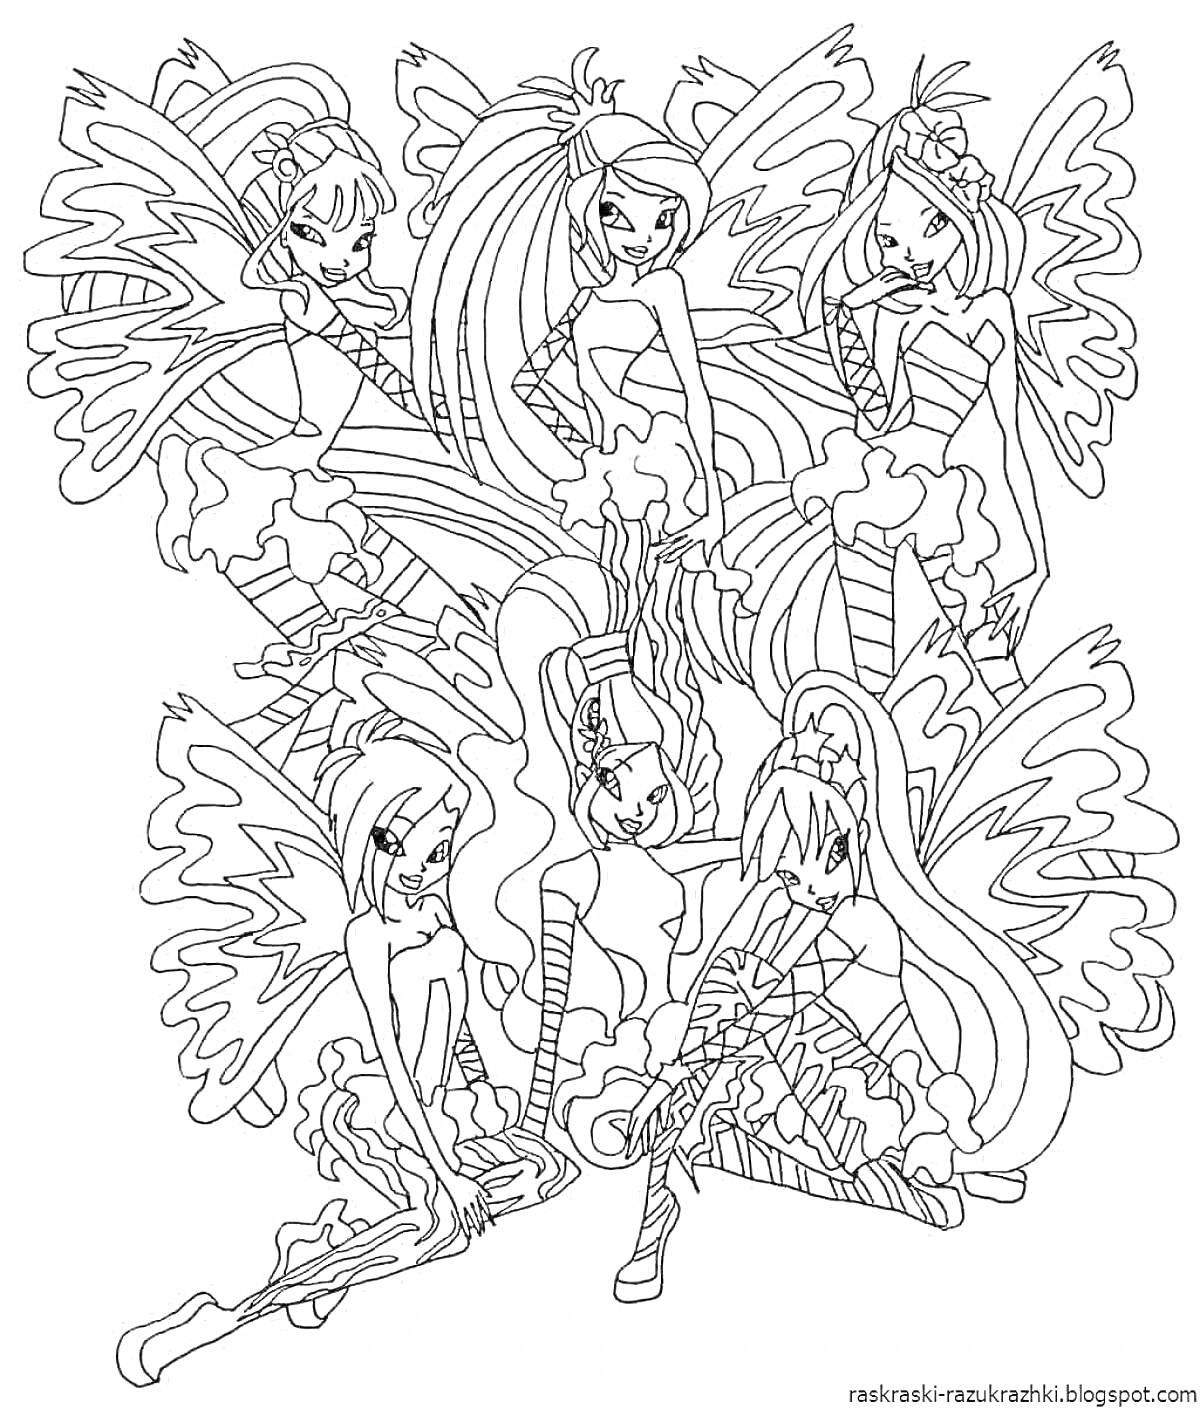 Картинка с изображением шести девушек с крыльями, в воздушных платьях, сидящих и стоящих в различных позах.